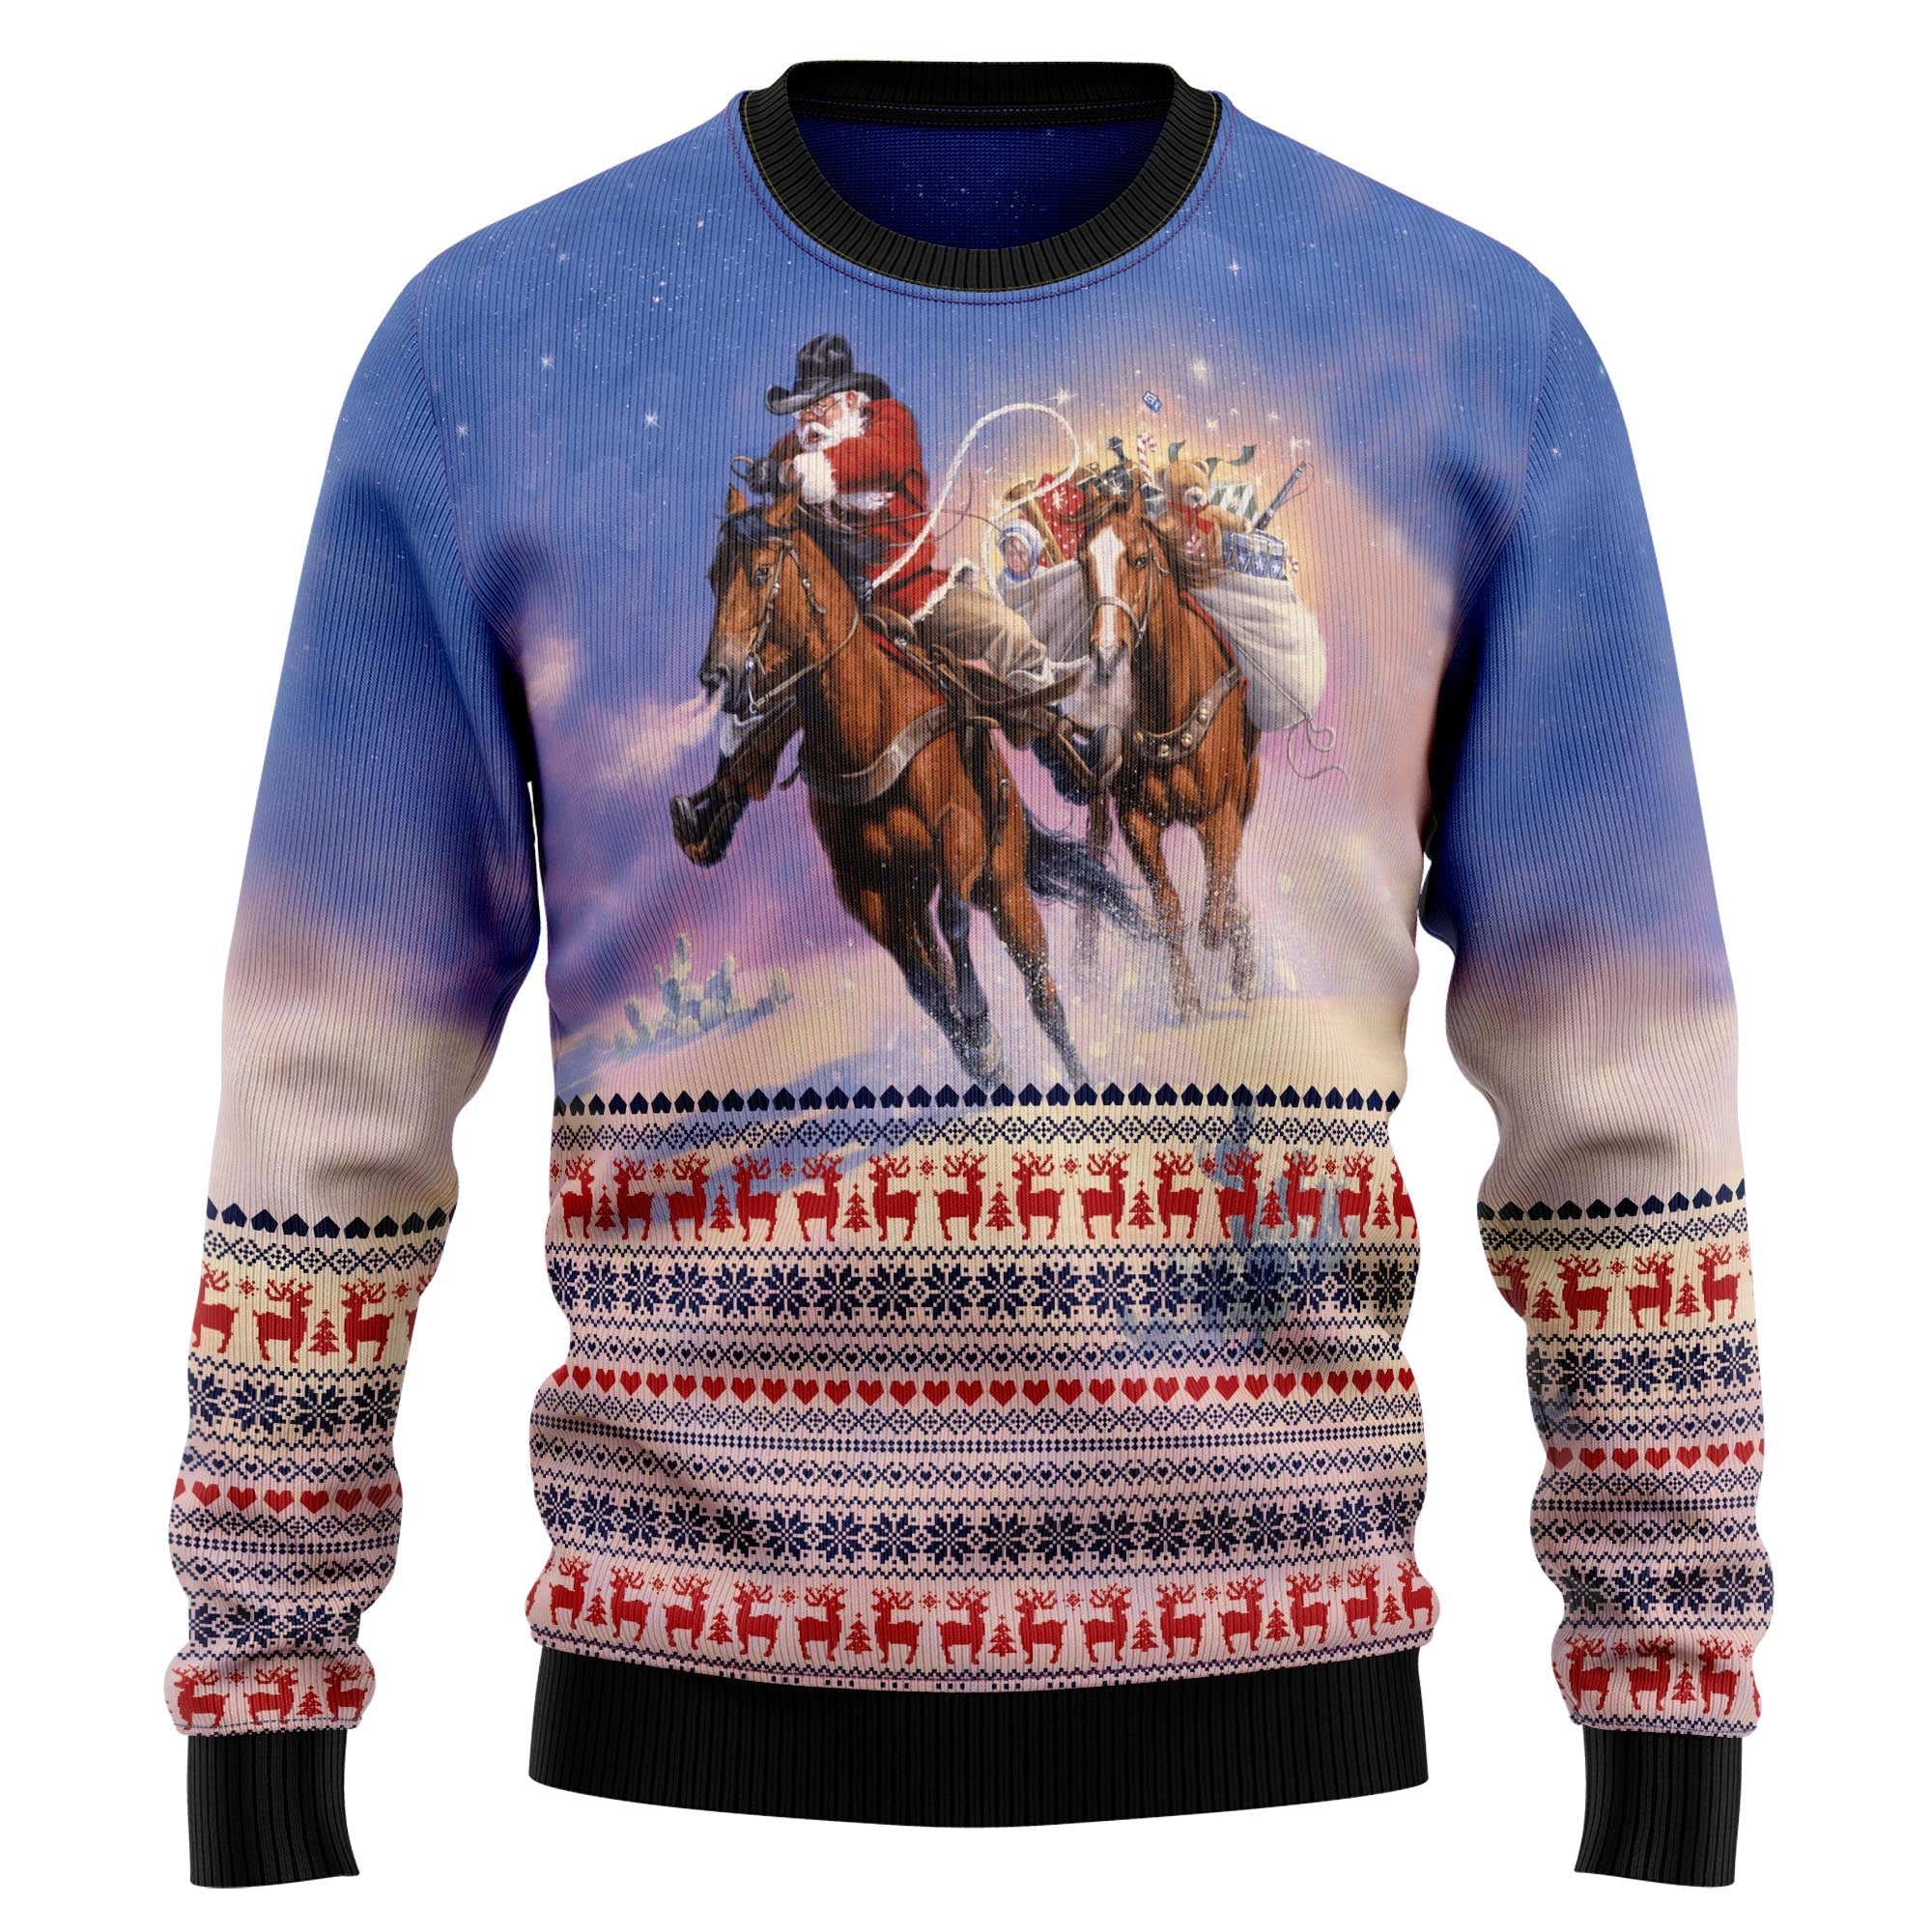 Cowboy Santa Claus Ugly Christmas Sweater